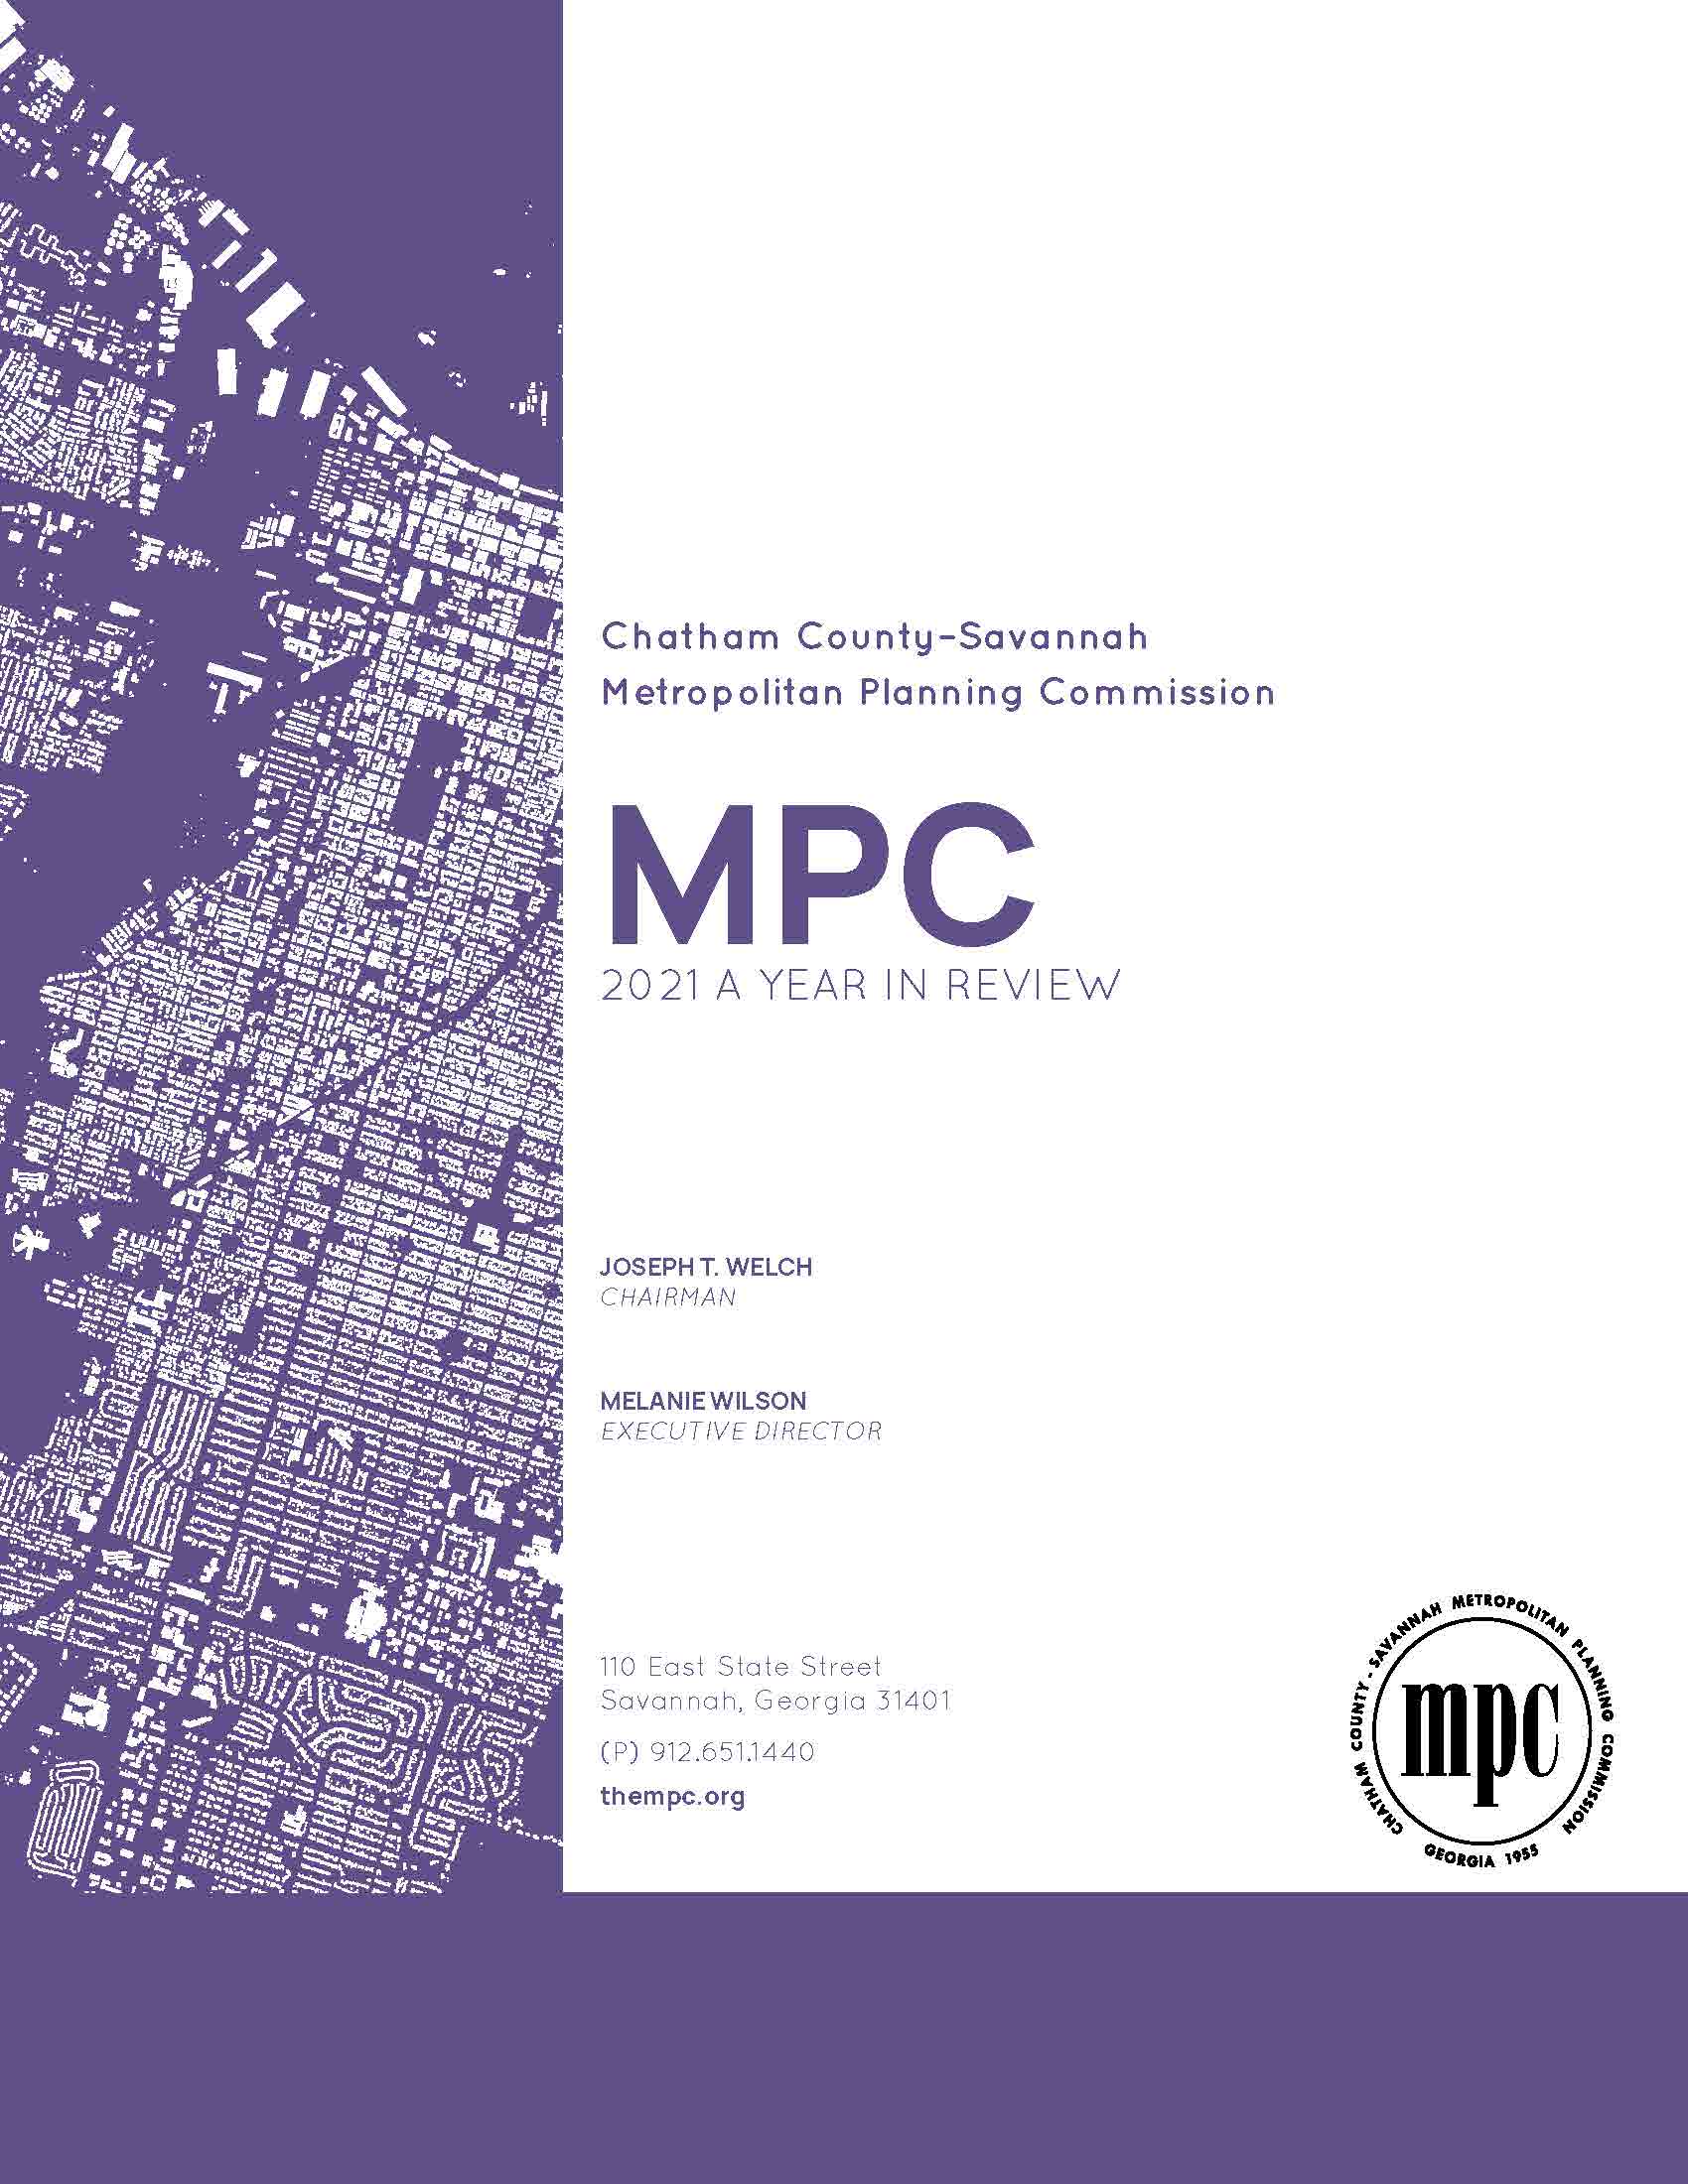 MPC 2022 Annual Report